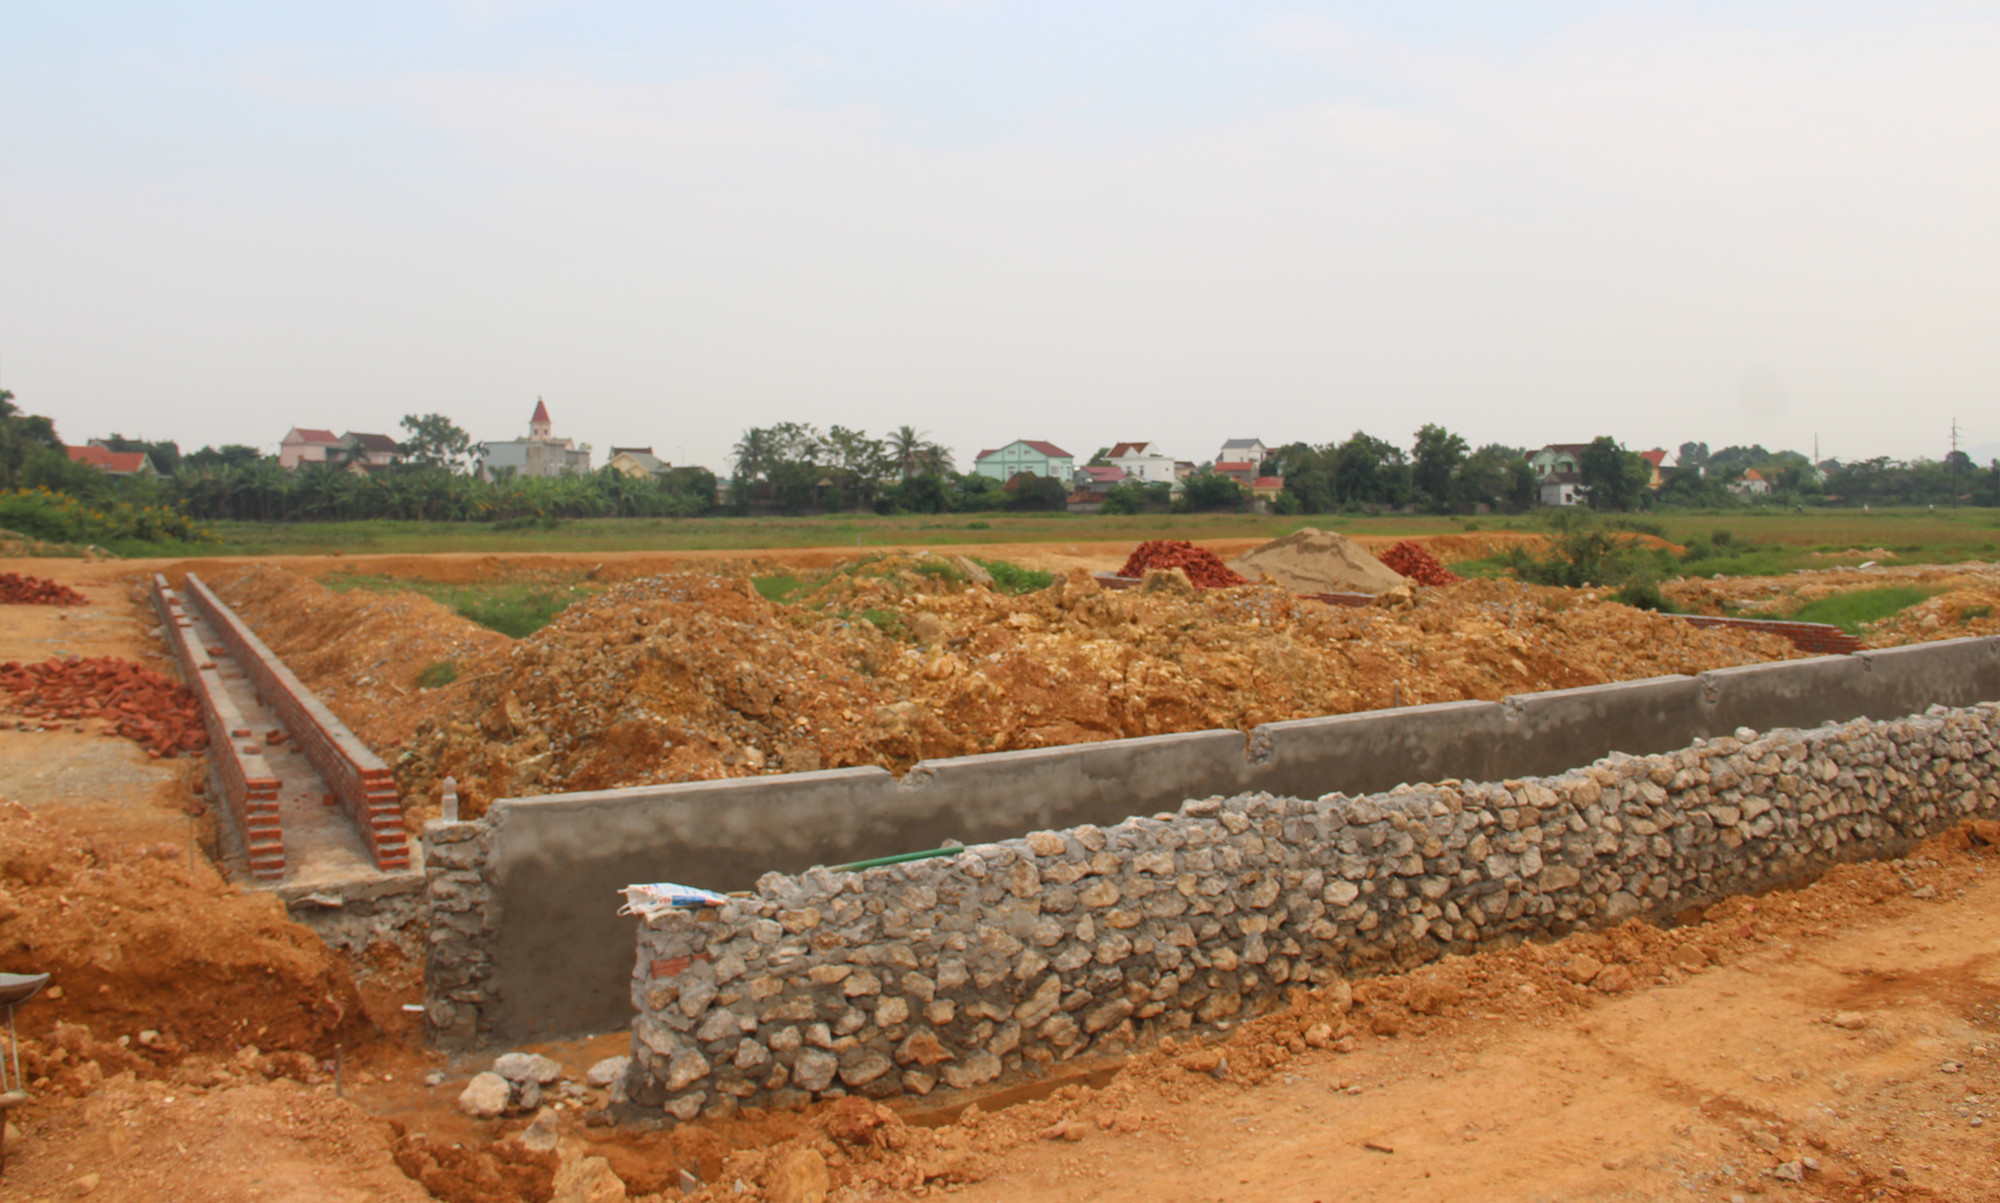 Thiếu đất san lấp nên công trình hạ tầng đấu giá đất thị trấn yên Thành đang phải tạm dừng thi công. Ảnh: V.T